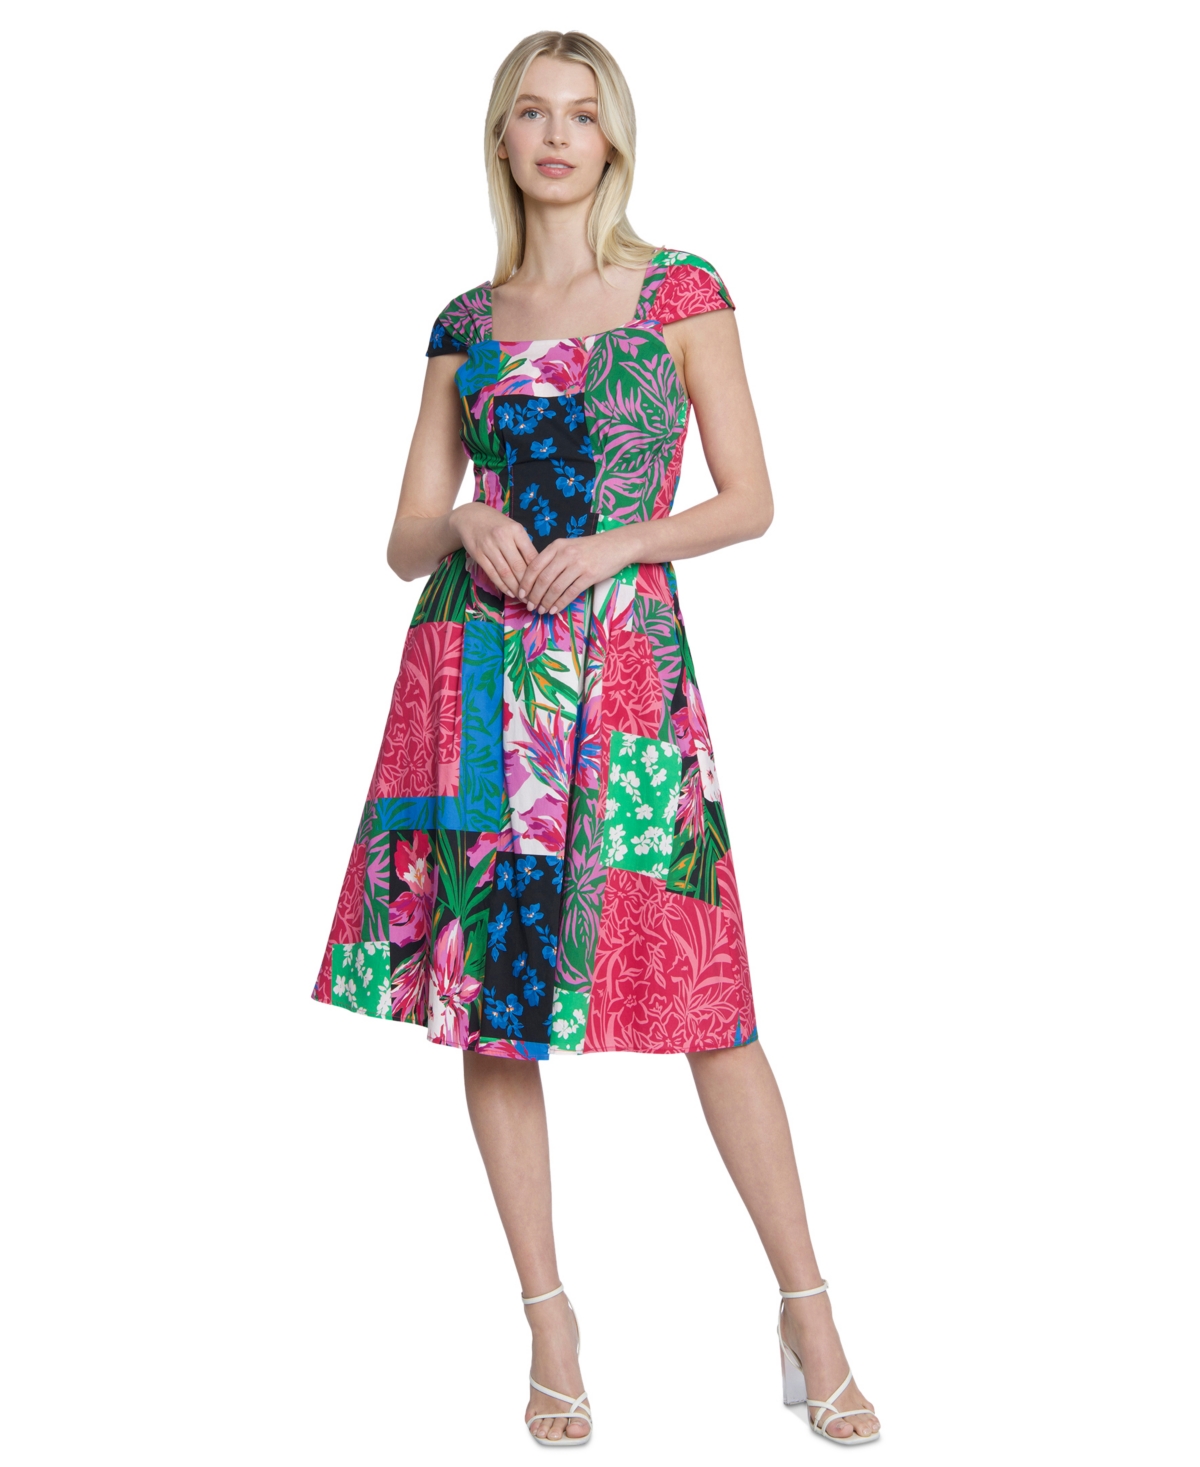 Women's Patchwork-Print Cap-Sleeve Dress - Pink/blue